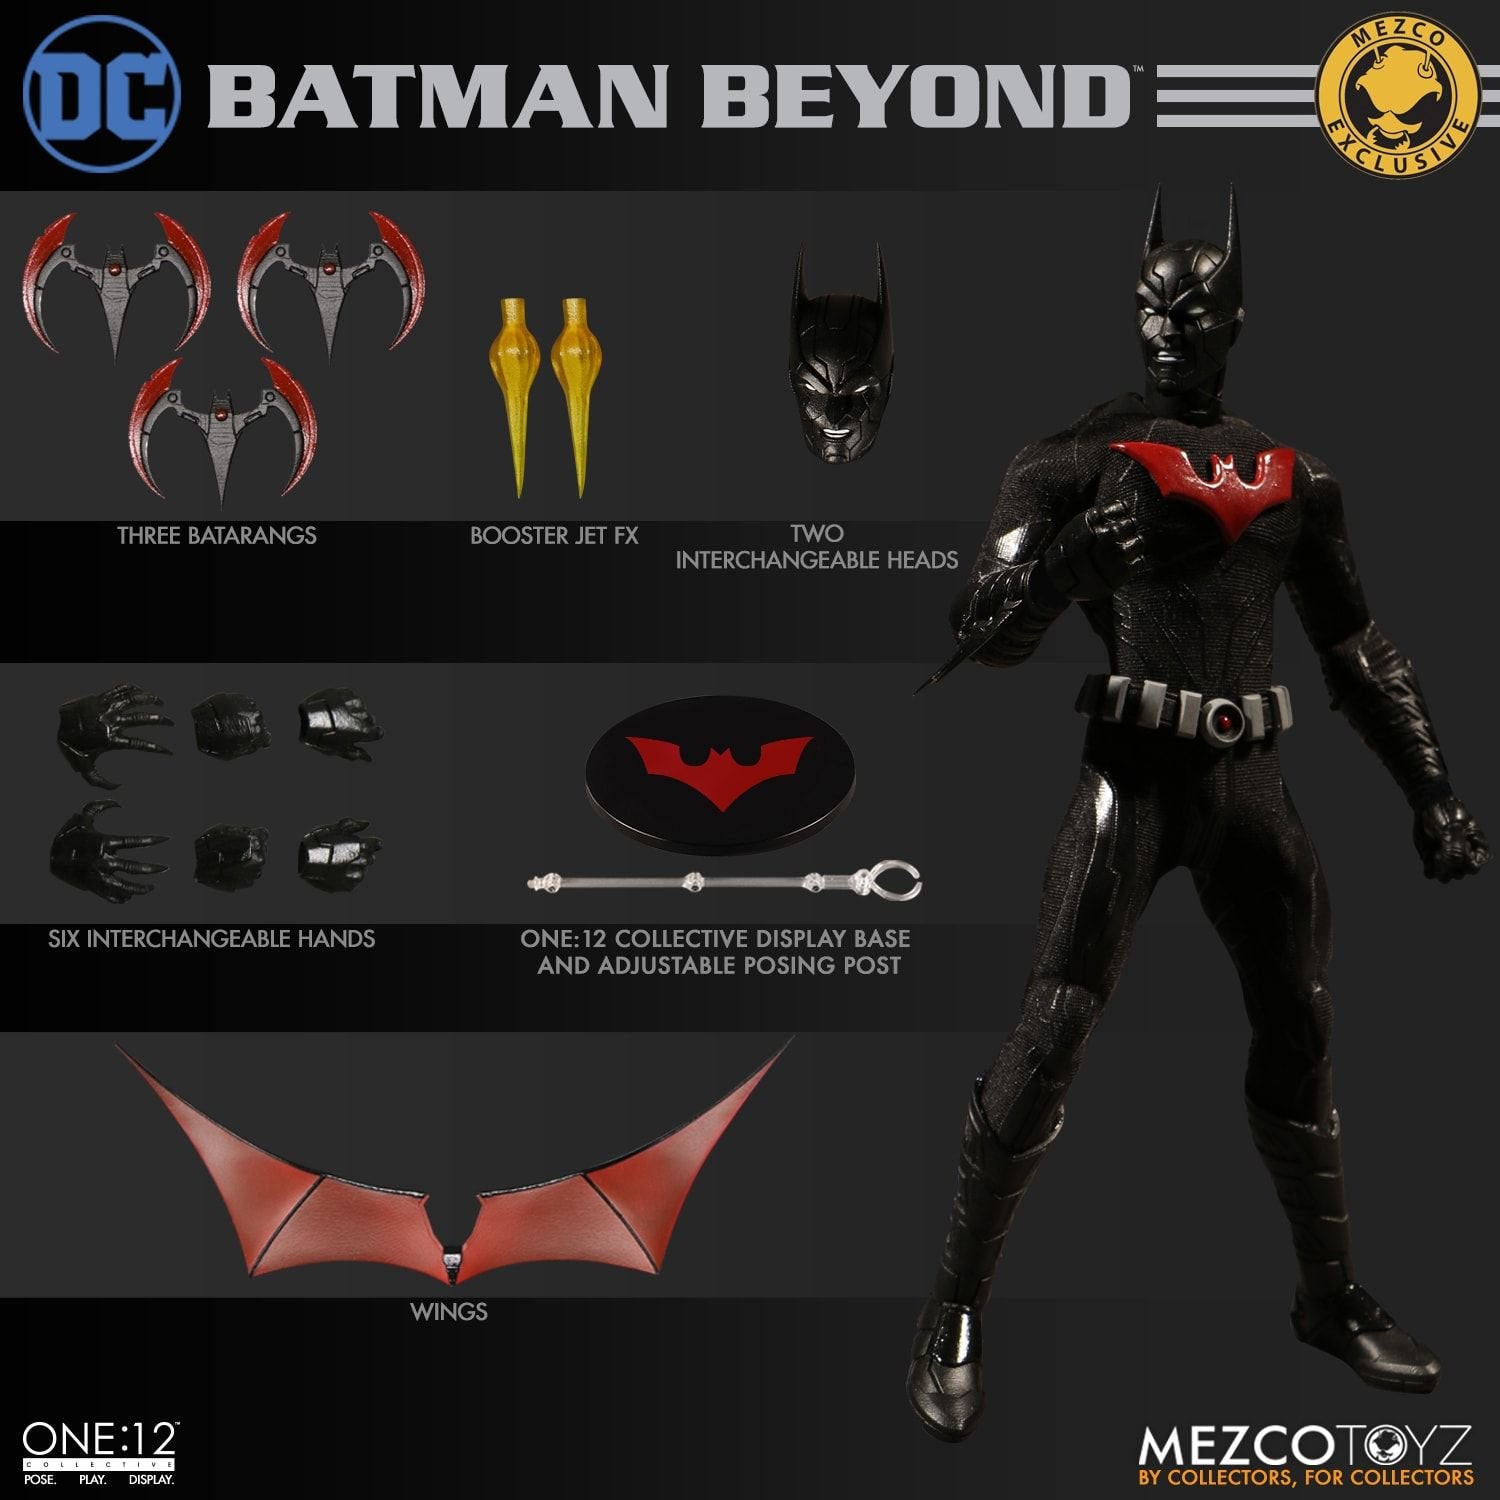 Mezco Toyz ONE:12 Collective: Batman Beyond  SDCC 2018 Exclusive Action Figure